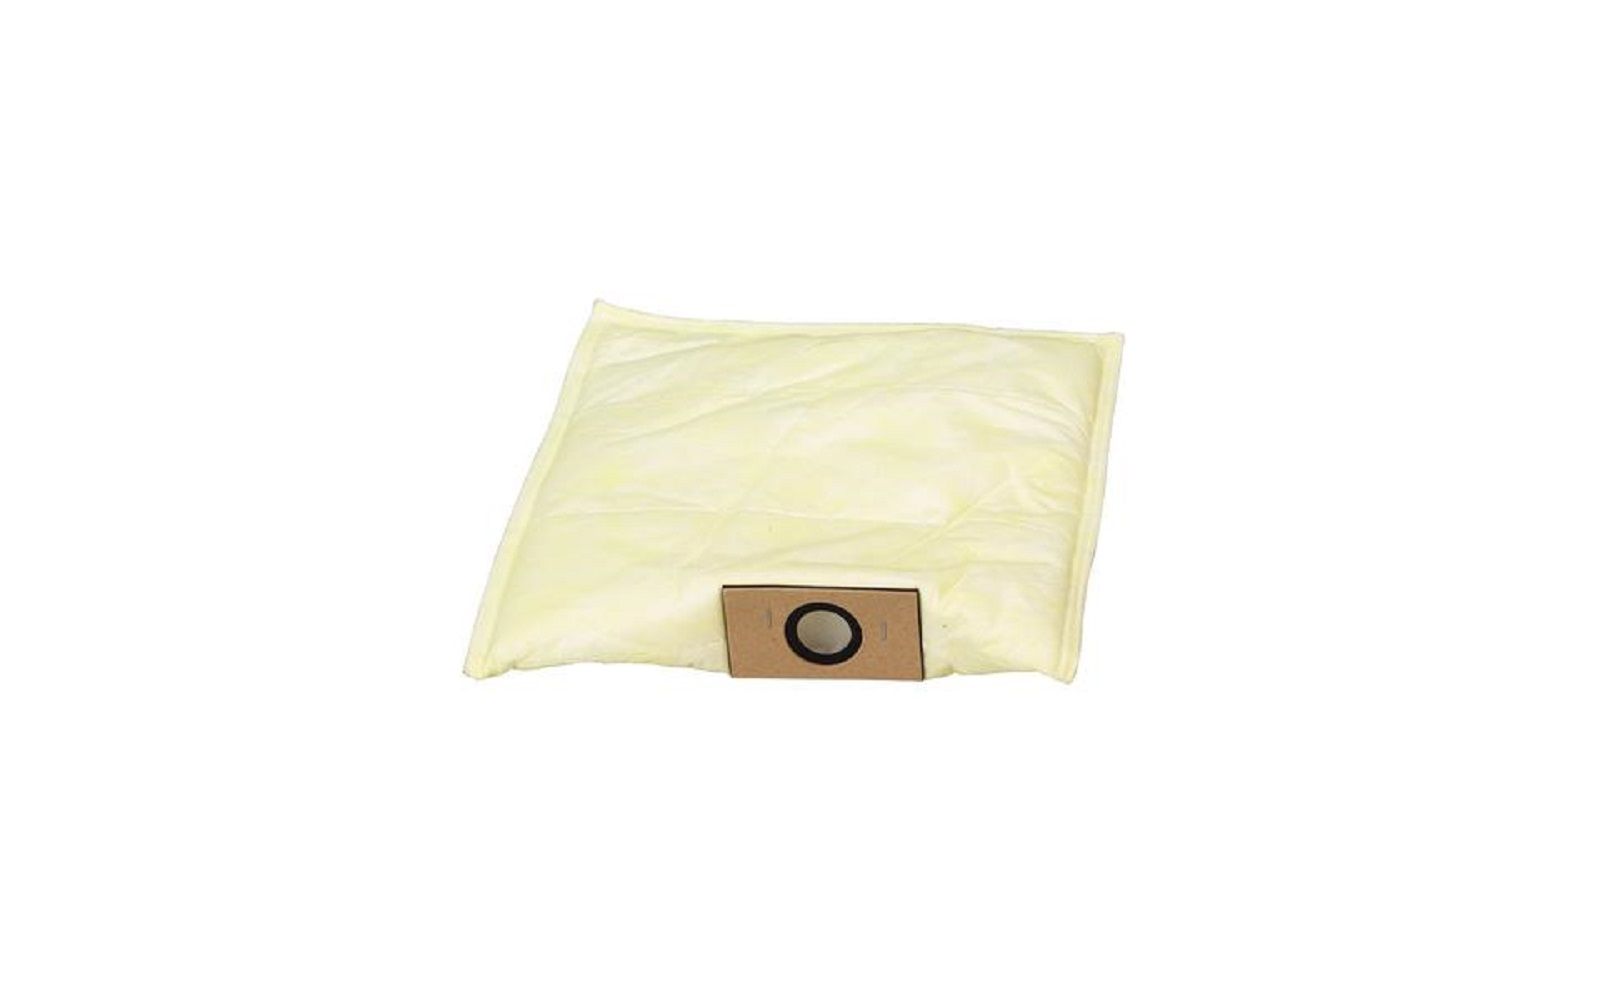 Filter bags for vaniman dust collectors, 5/pkg